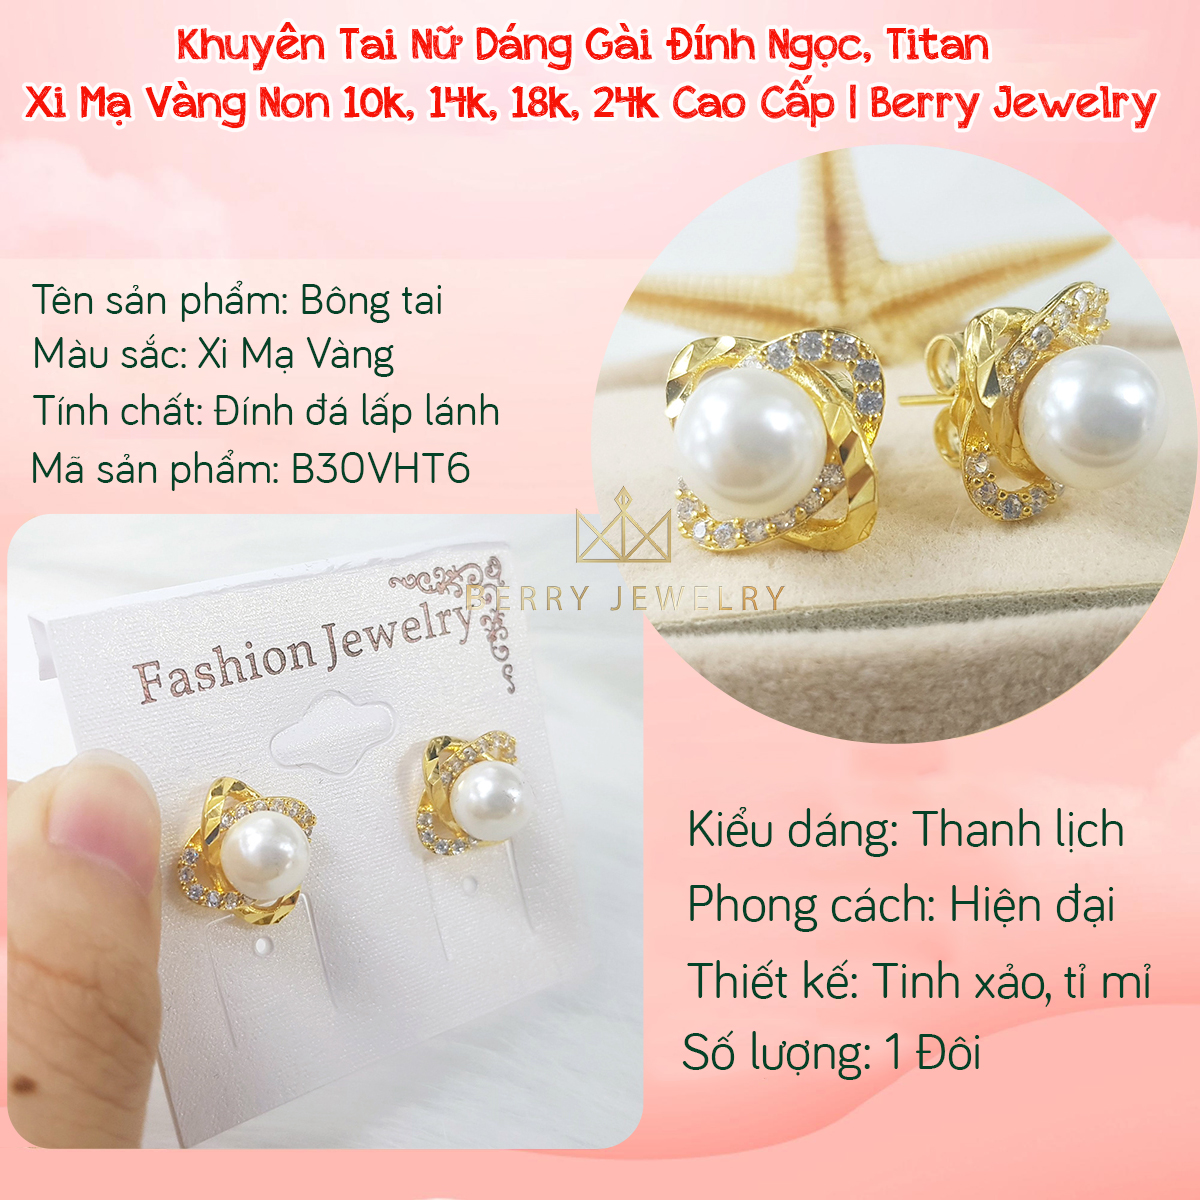 Khuyên Tai Nữ Titan Xi Mạ Vàng Dáng Nụ Đính Trái Châu Trắng Thiết Kế Cá Tính Trẻ Trung Hợp Thời Trang, Bông Tai Nữ Mạ Vàng B30V6 | Berry Jewelry